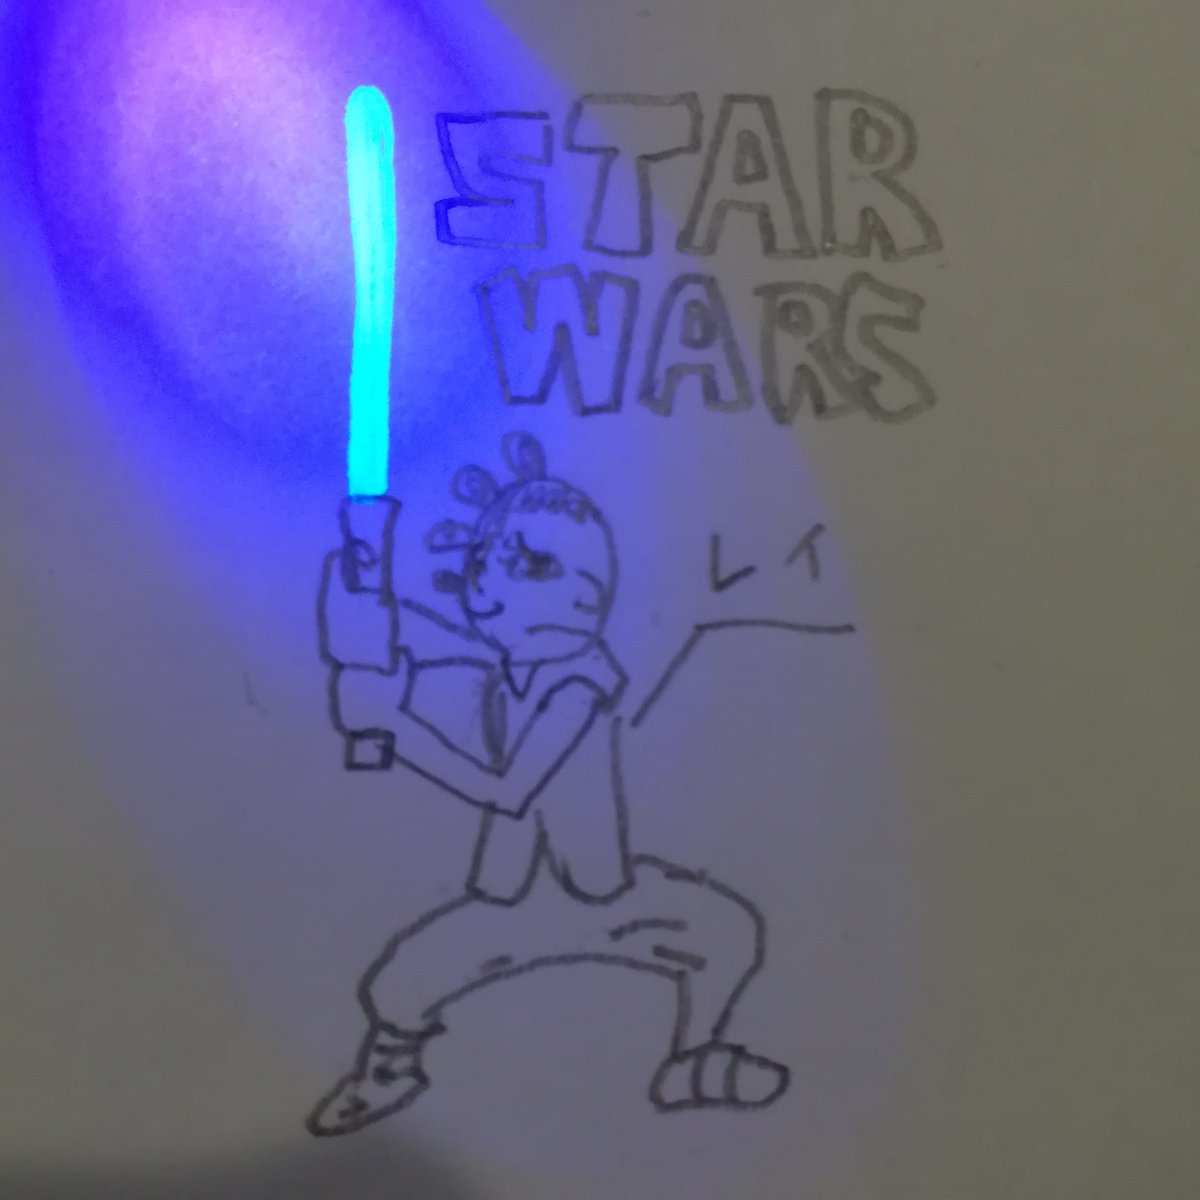 西尾カタクス Twitterren Star Warsのレイのイラスト ライトセーバーはブラックライトペンで書きました レイは信念があり強いから好き Starwars イラスト ブラックライトペン スパイペン